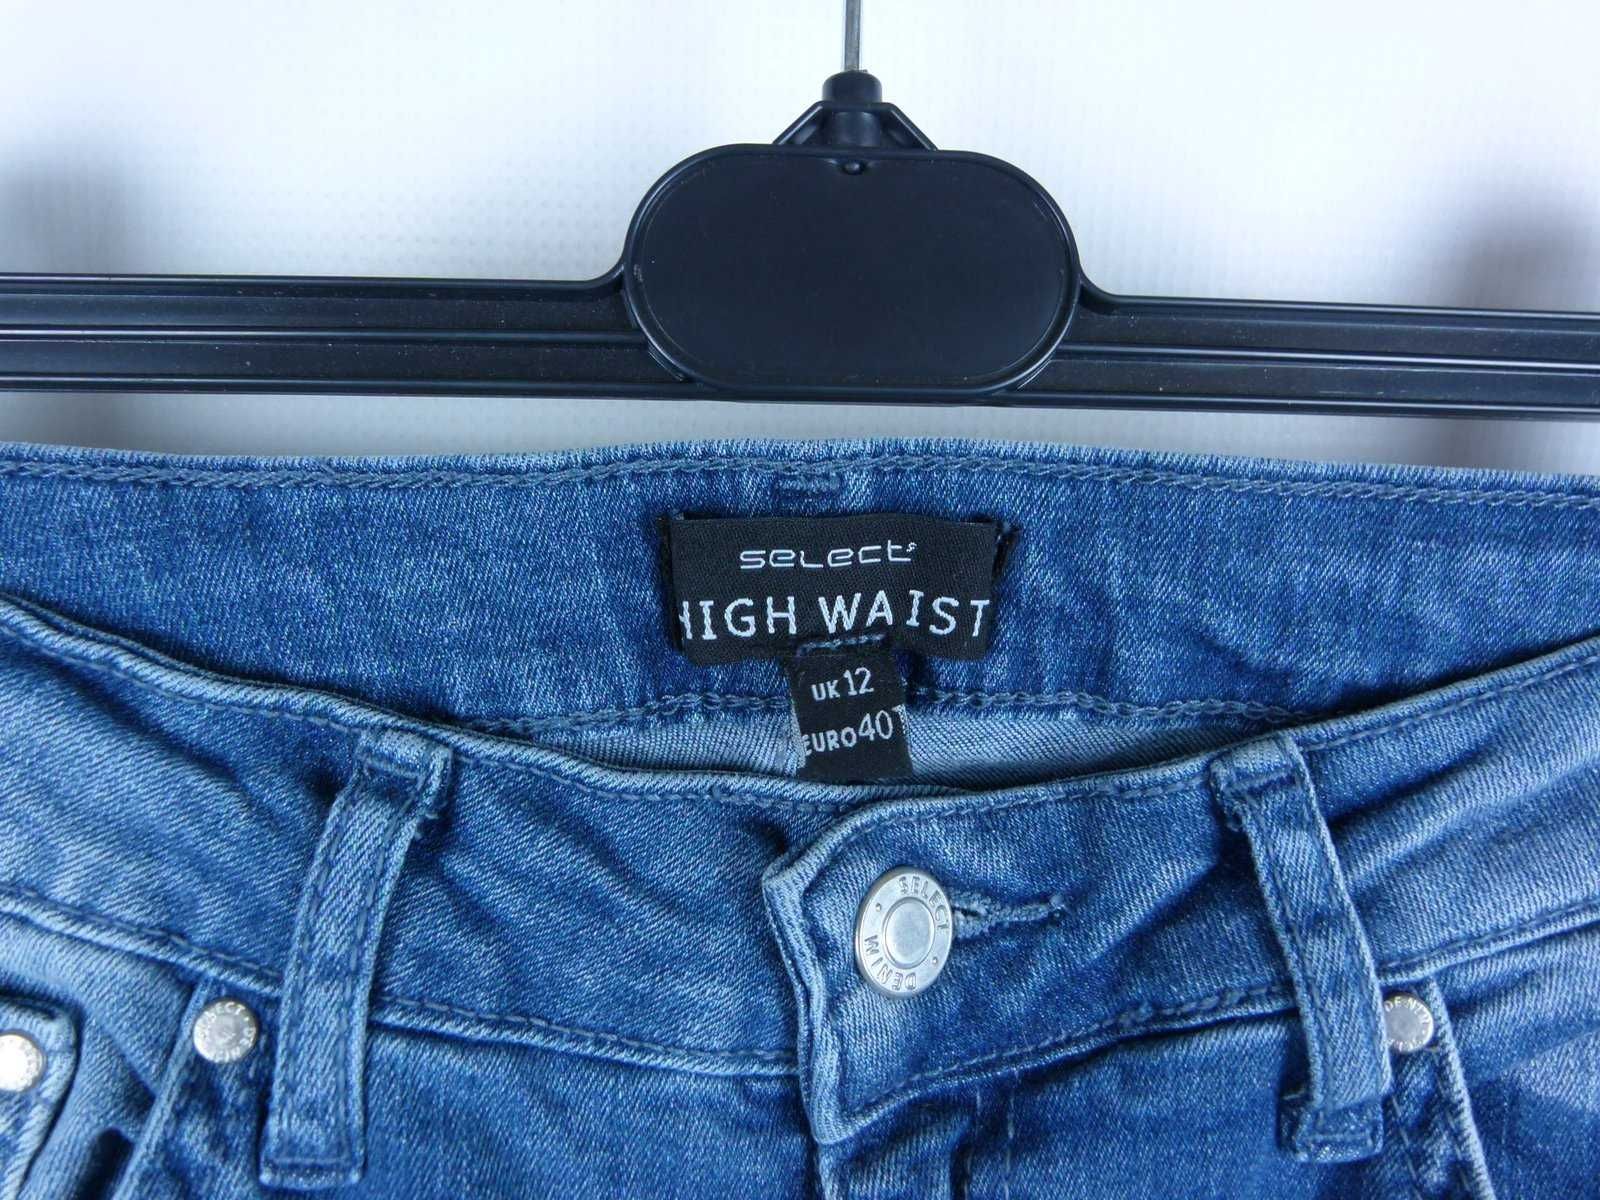 Select High Waist spodnie dżins dziury 12 / 40